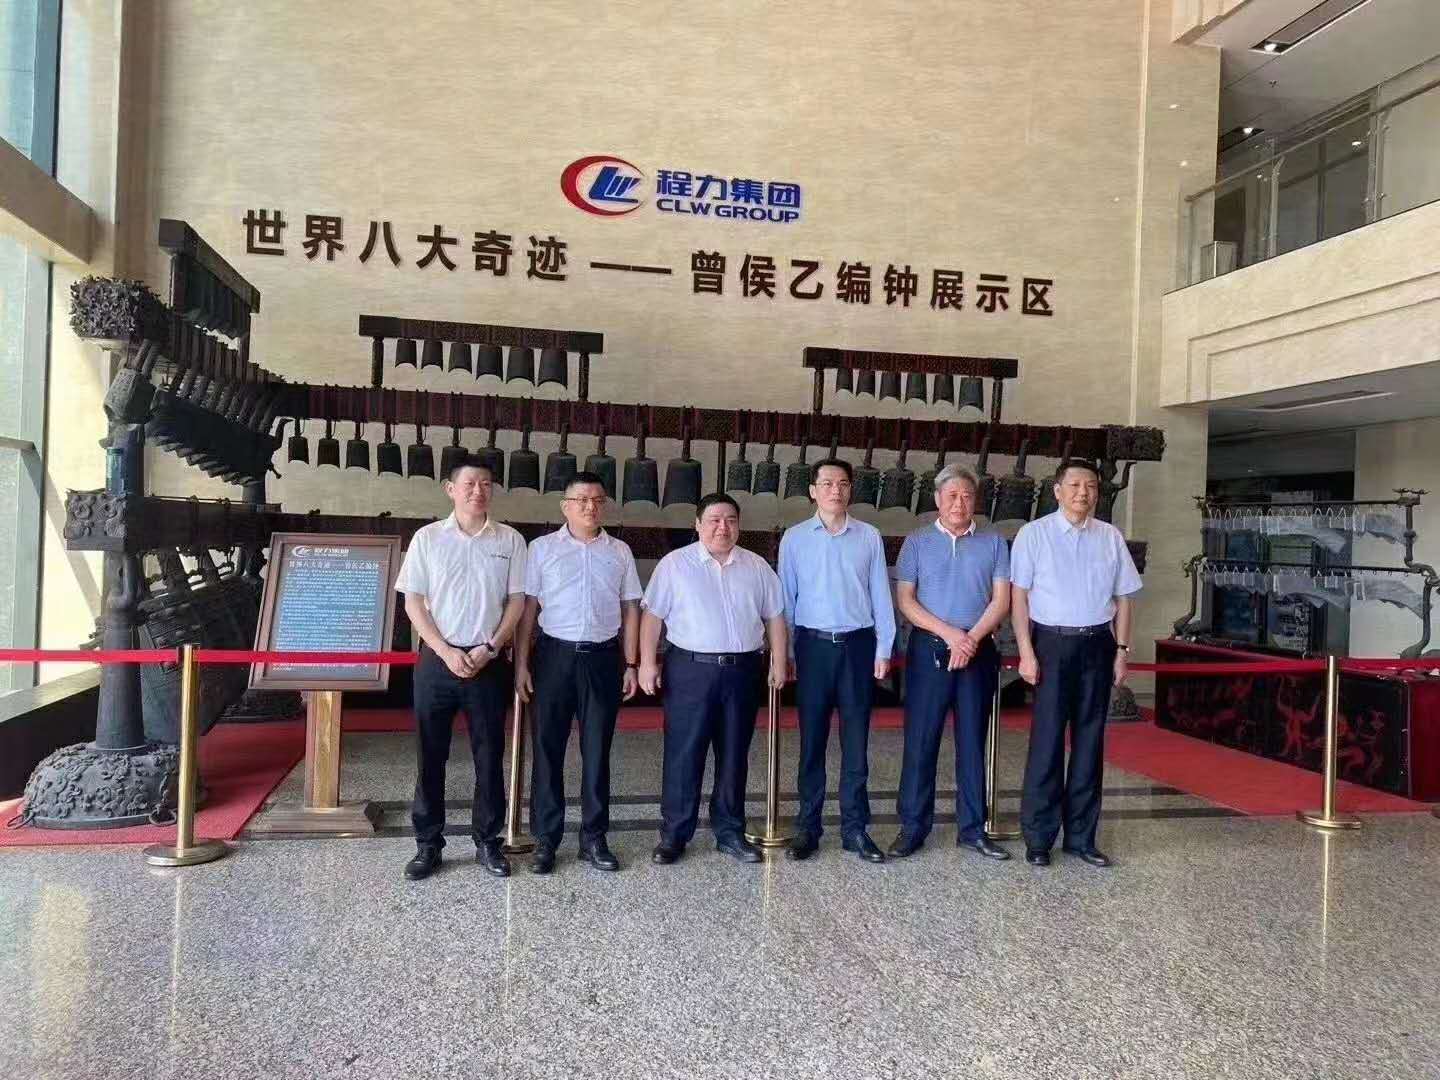 比亚迪集团牵手湖北程力集团 最强中国制造